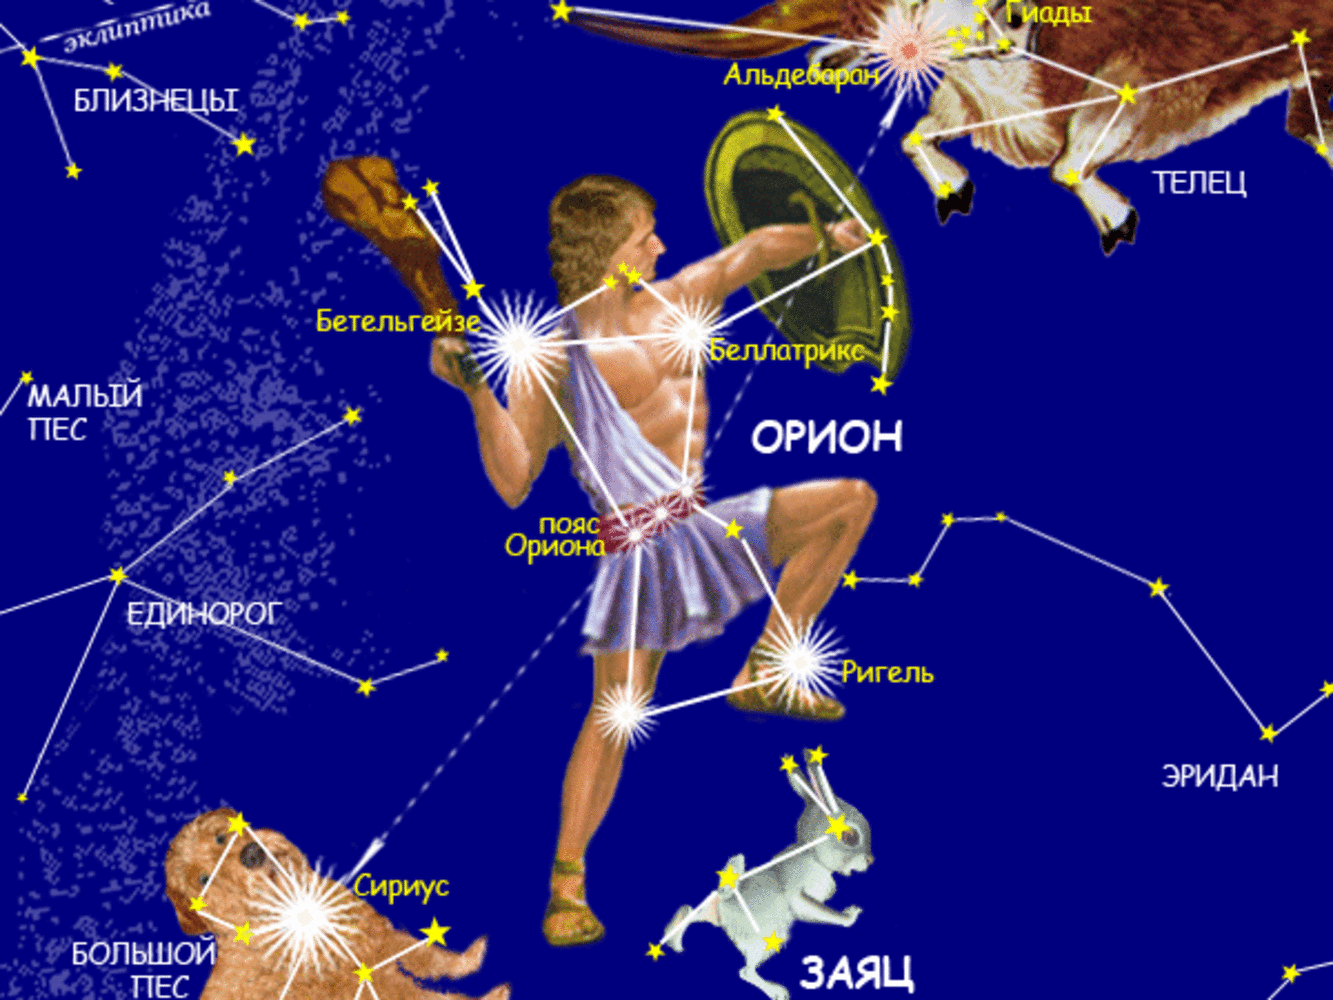 Созвездие орион на звездном небе. Созвездие Орион название звезд. Орион Созвездие схема самая яркая звезда. Орион Созвездие схема со звездами. Созвездие Ориона на небе с названиями звезд.